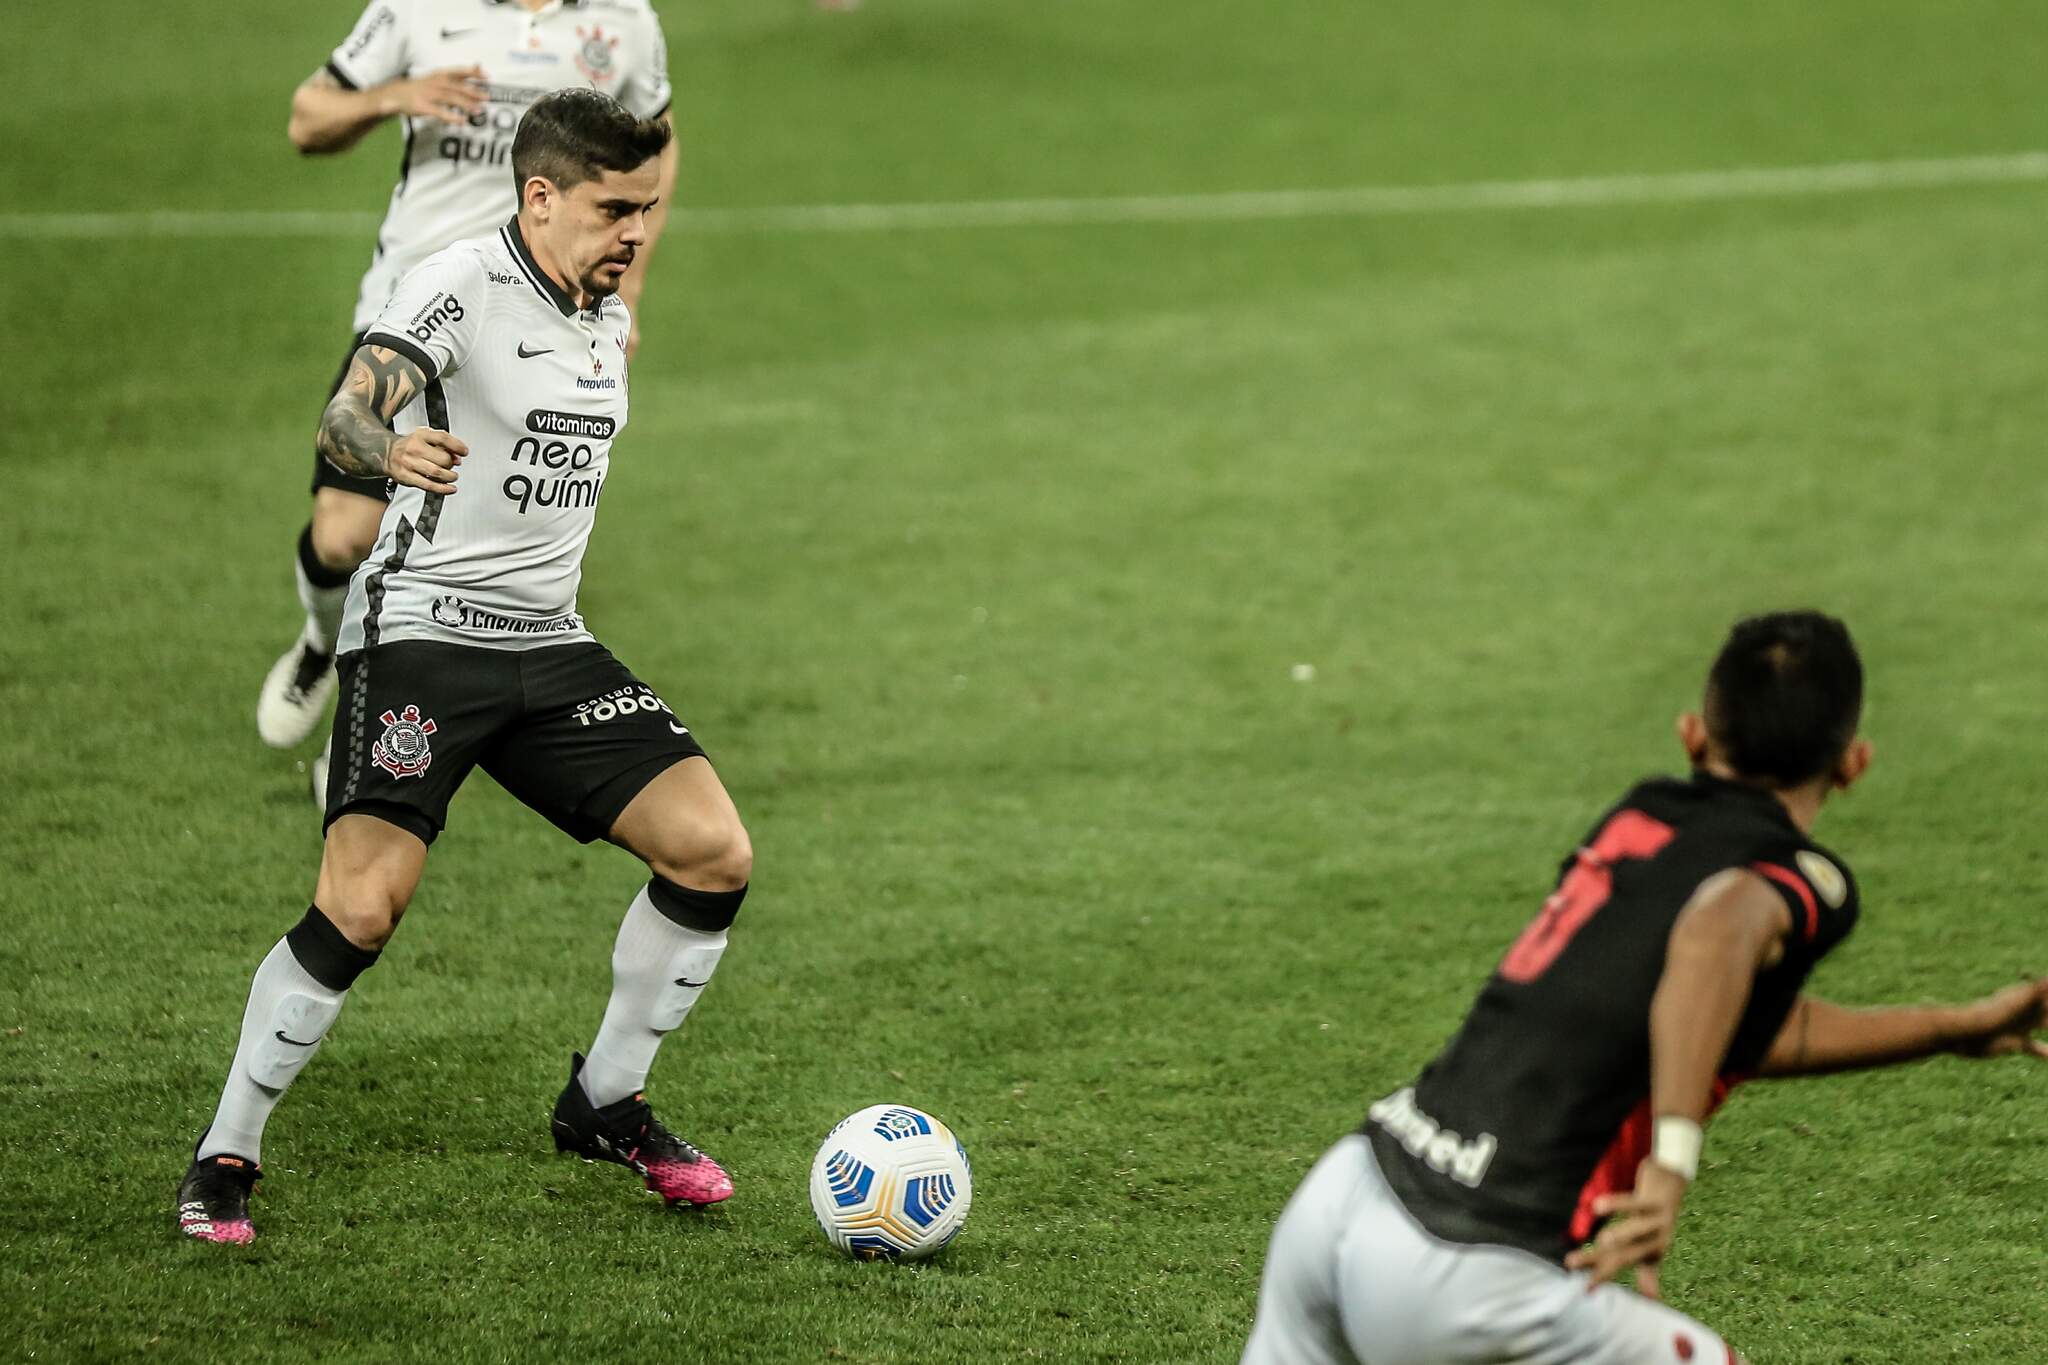 Corinthians perde para Atlético-GO e se complica na Copa do Brasil - Jogada  - Diário do Nordeste